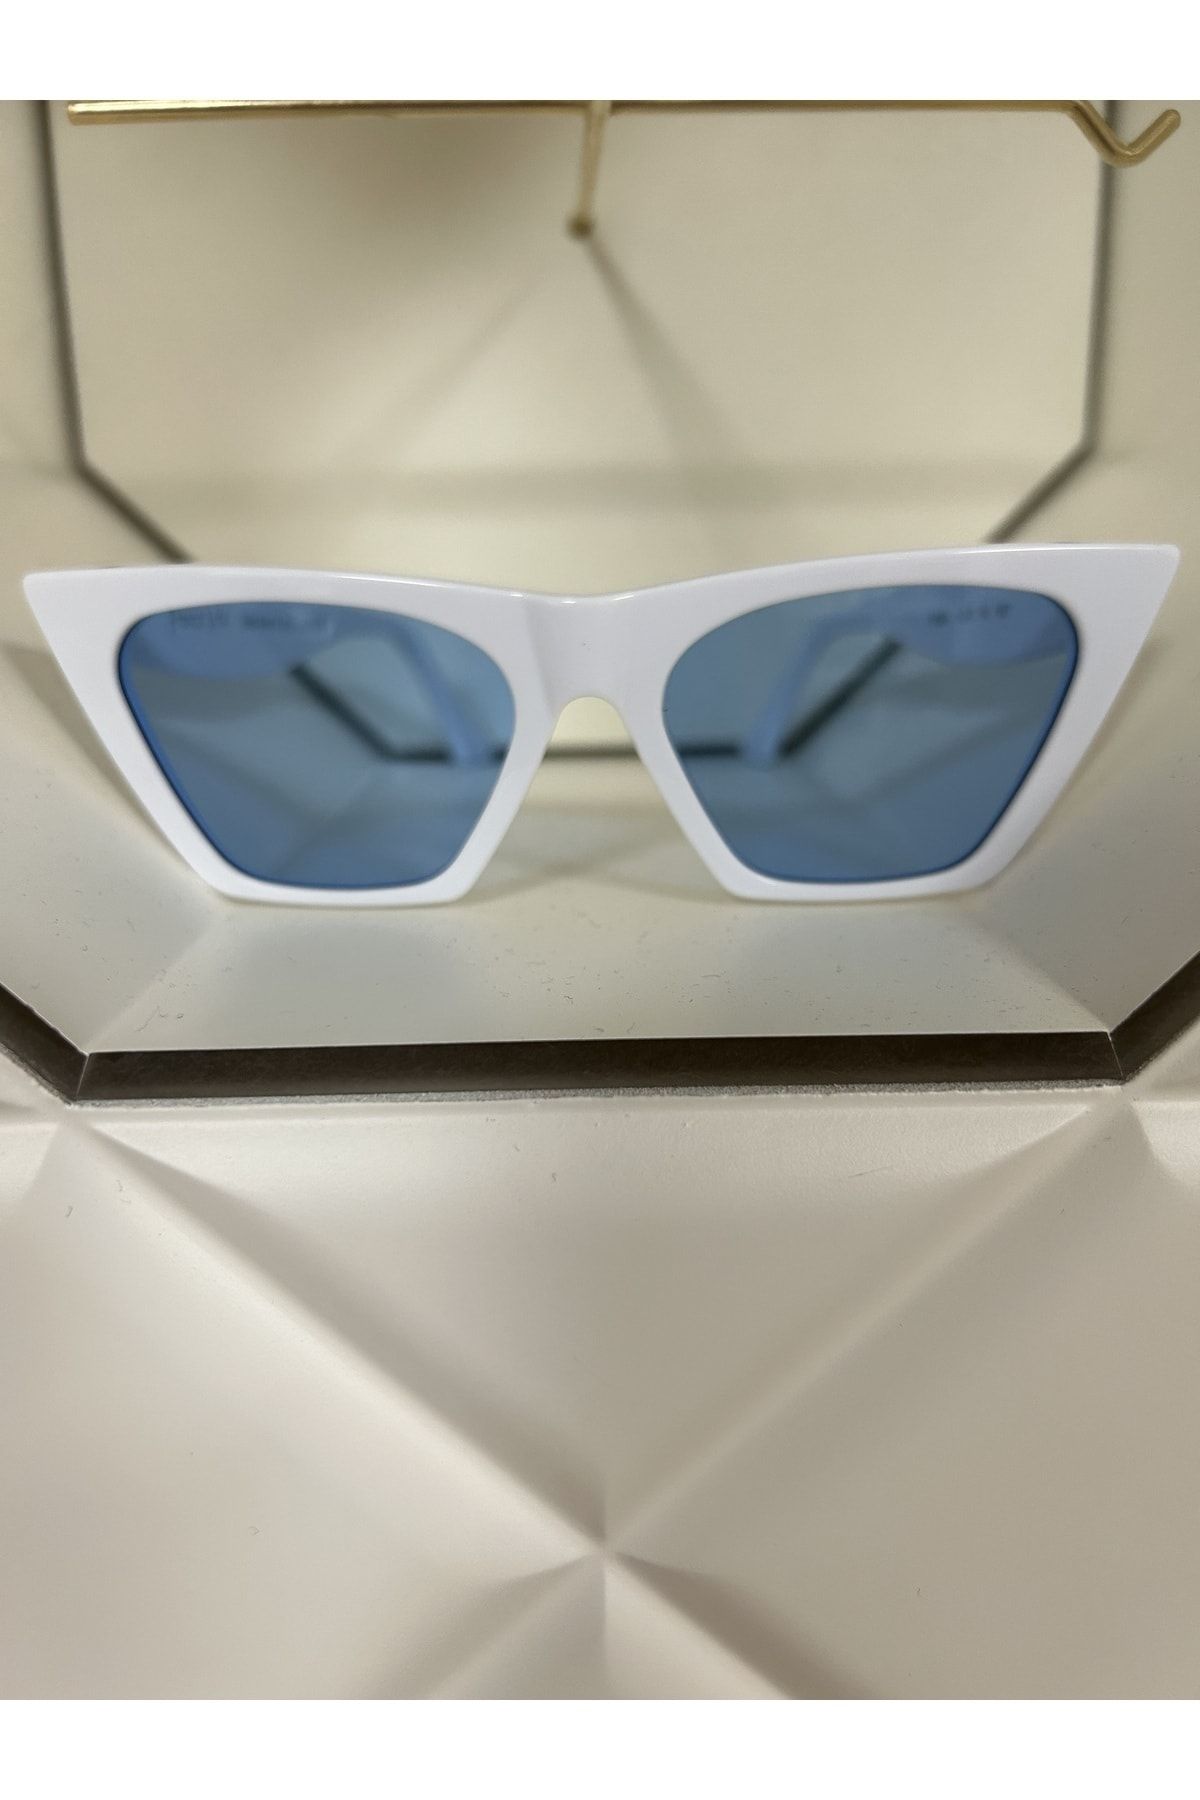 FRANCO VITAL Fvsumawht Kadın Güneş Gözlüğü Beyaz Kemik Çerçeveli Degrade Lens Uv400